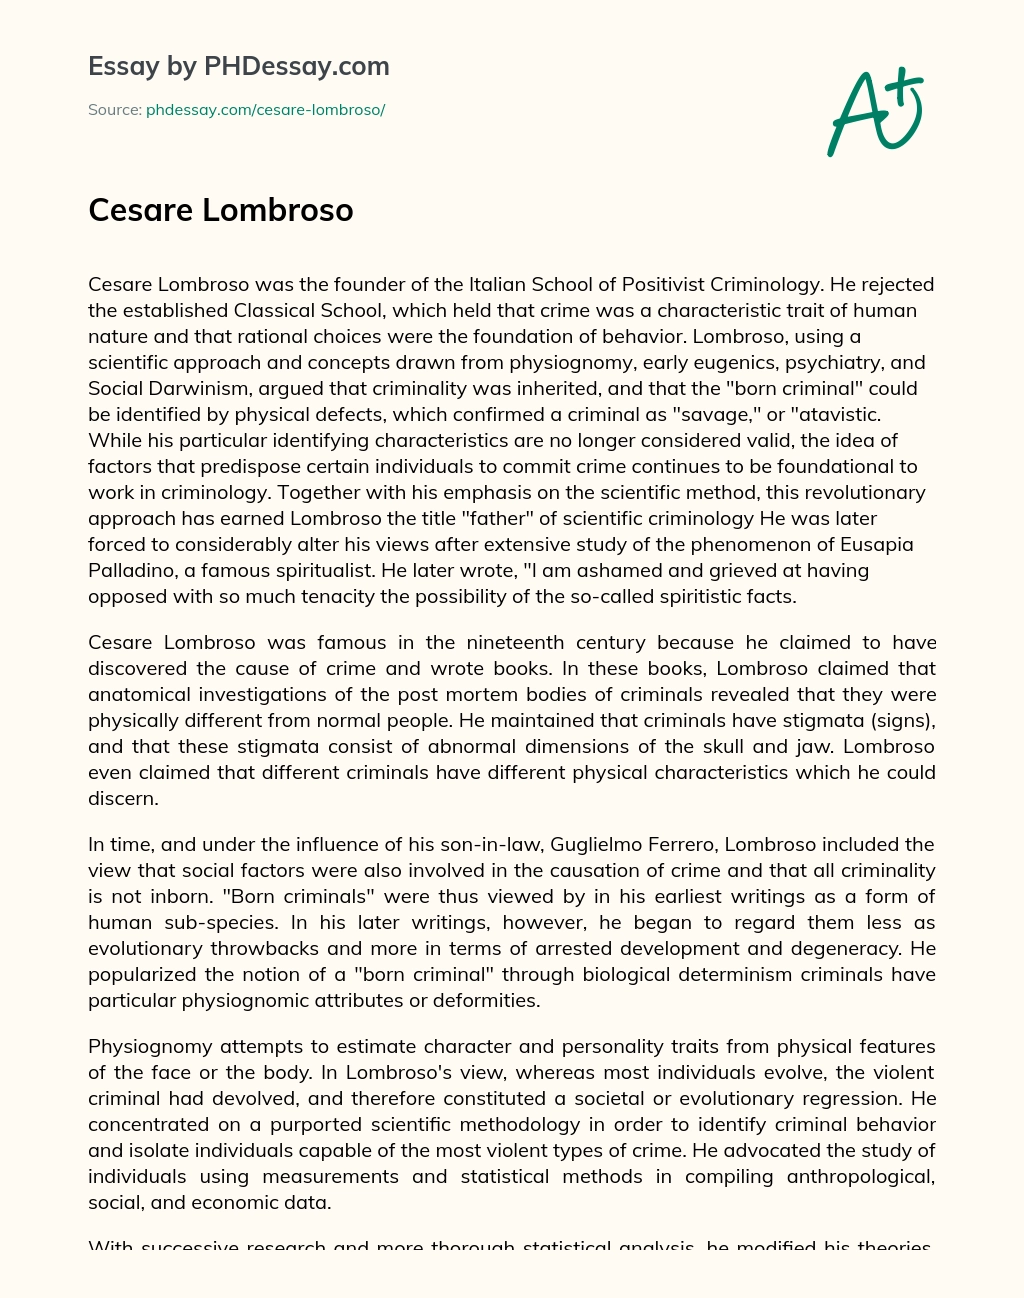 Cesare Lombroso essay